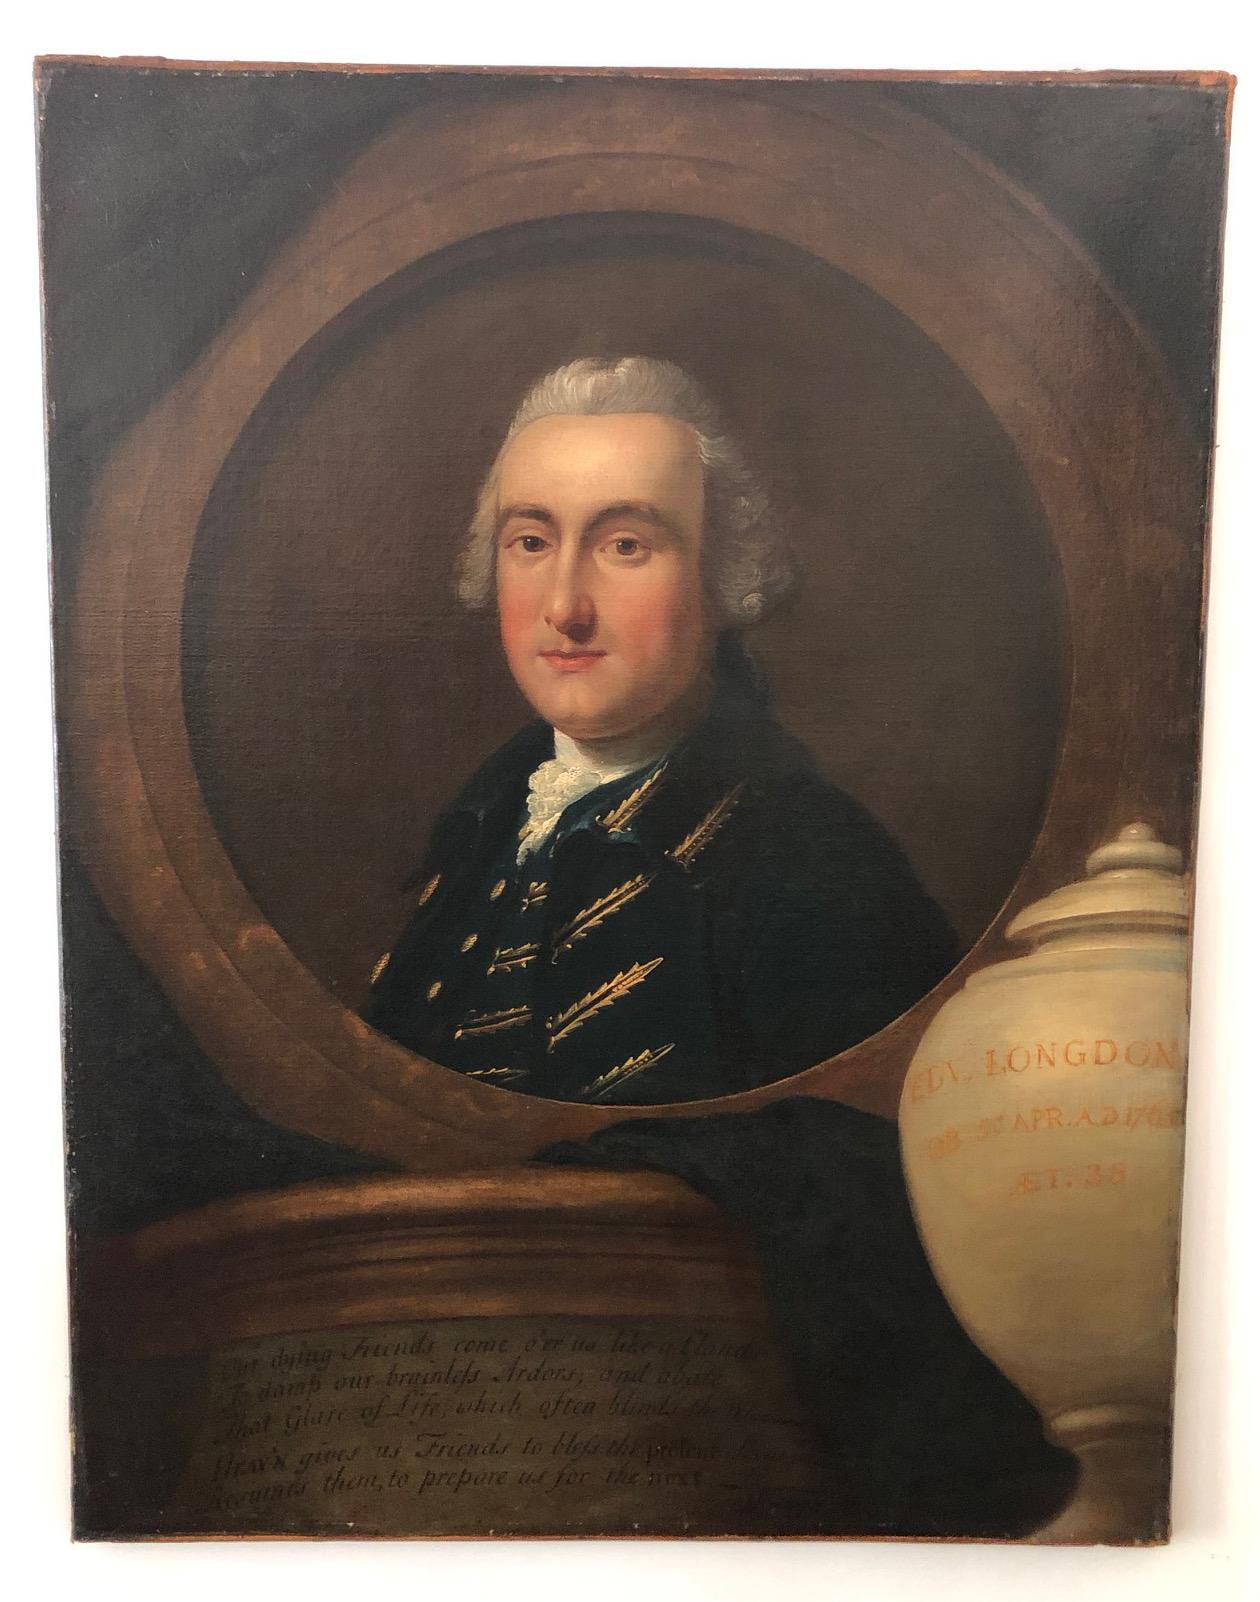 Außergewöhnliches englisches neoklassizistisches Gedenk- oder Trauerporträt eines Gentleman aus der Zeit Georgs III., das dem berühmten Londoner Porträtisten Thomas Hudson (1701-1779) zugeschrieben wird. Es zeigt 